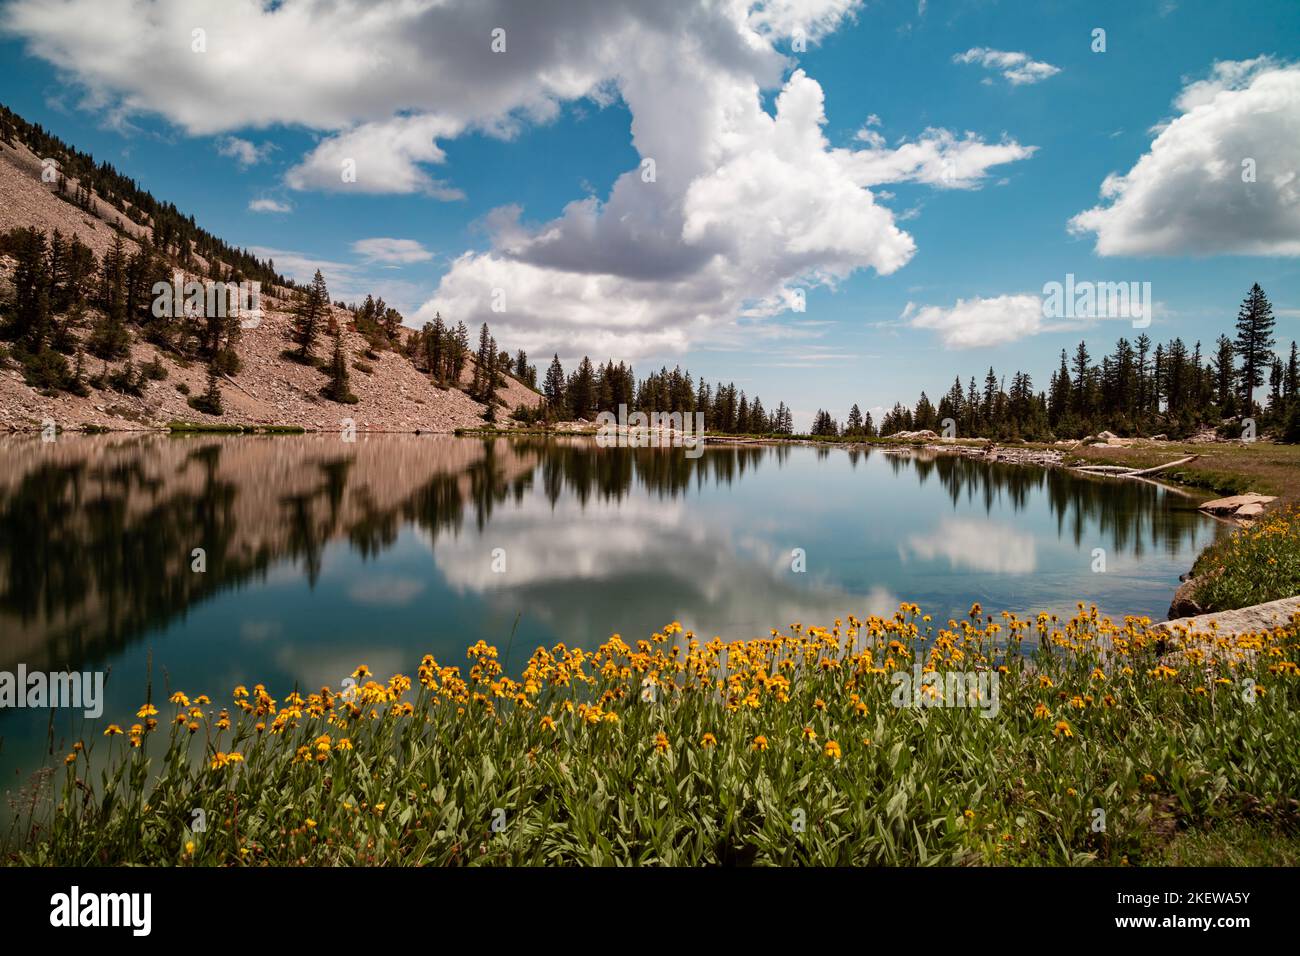 Flores amarillas en el borde del lago Johnson, un lago alpino en la cordillera Snake, ubicado dentro del Parque Nacional Great Basin en Nevada, visto en el verano. Foto de stock